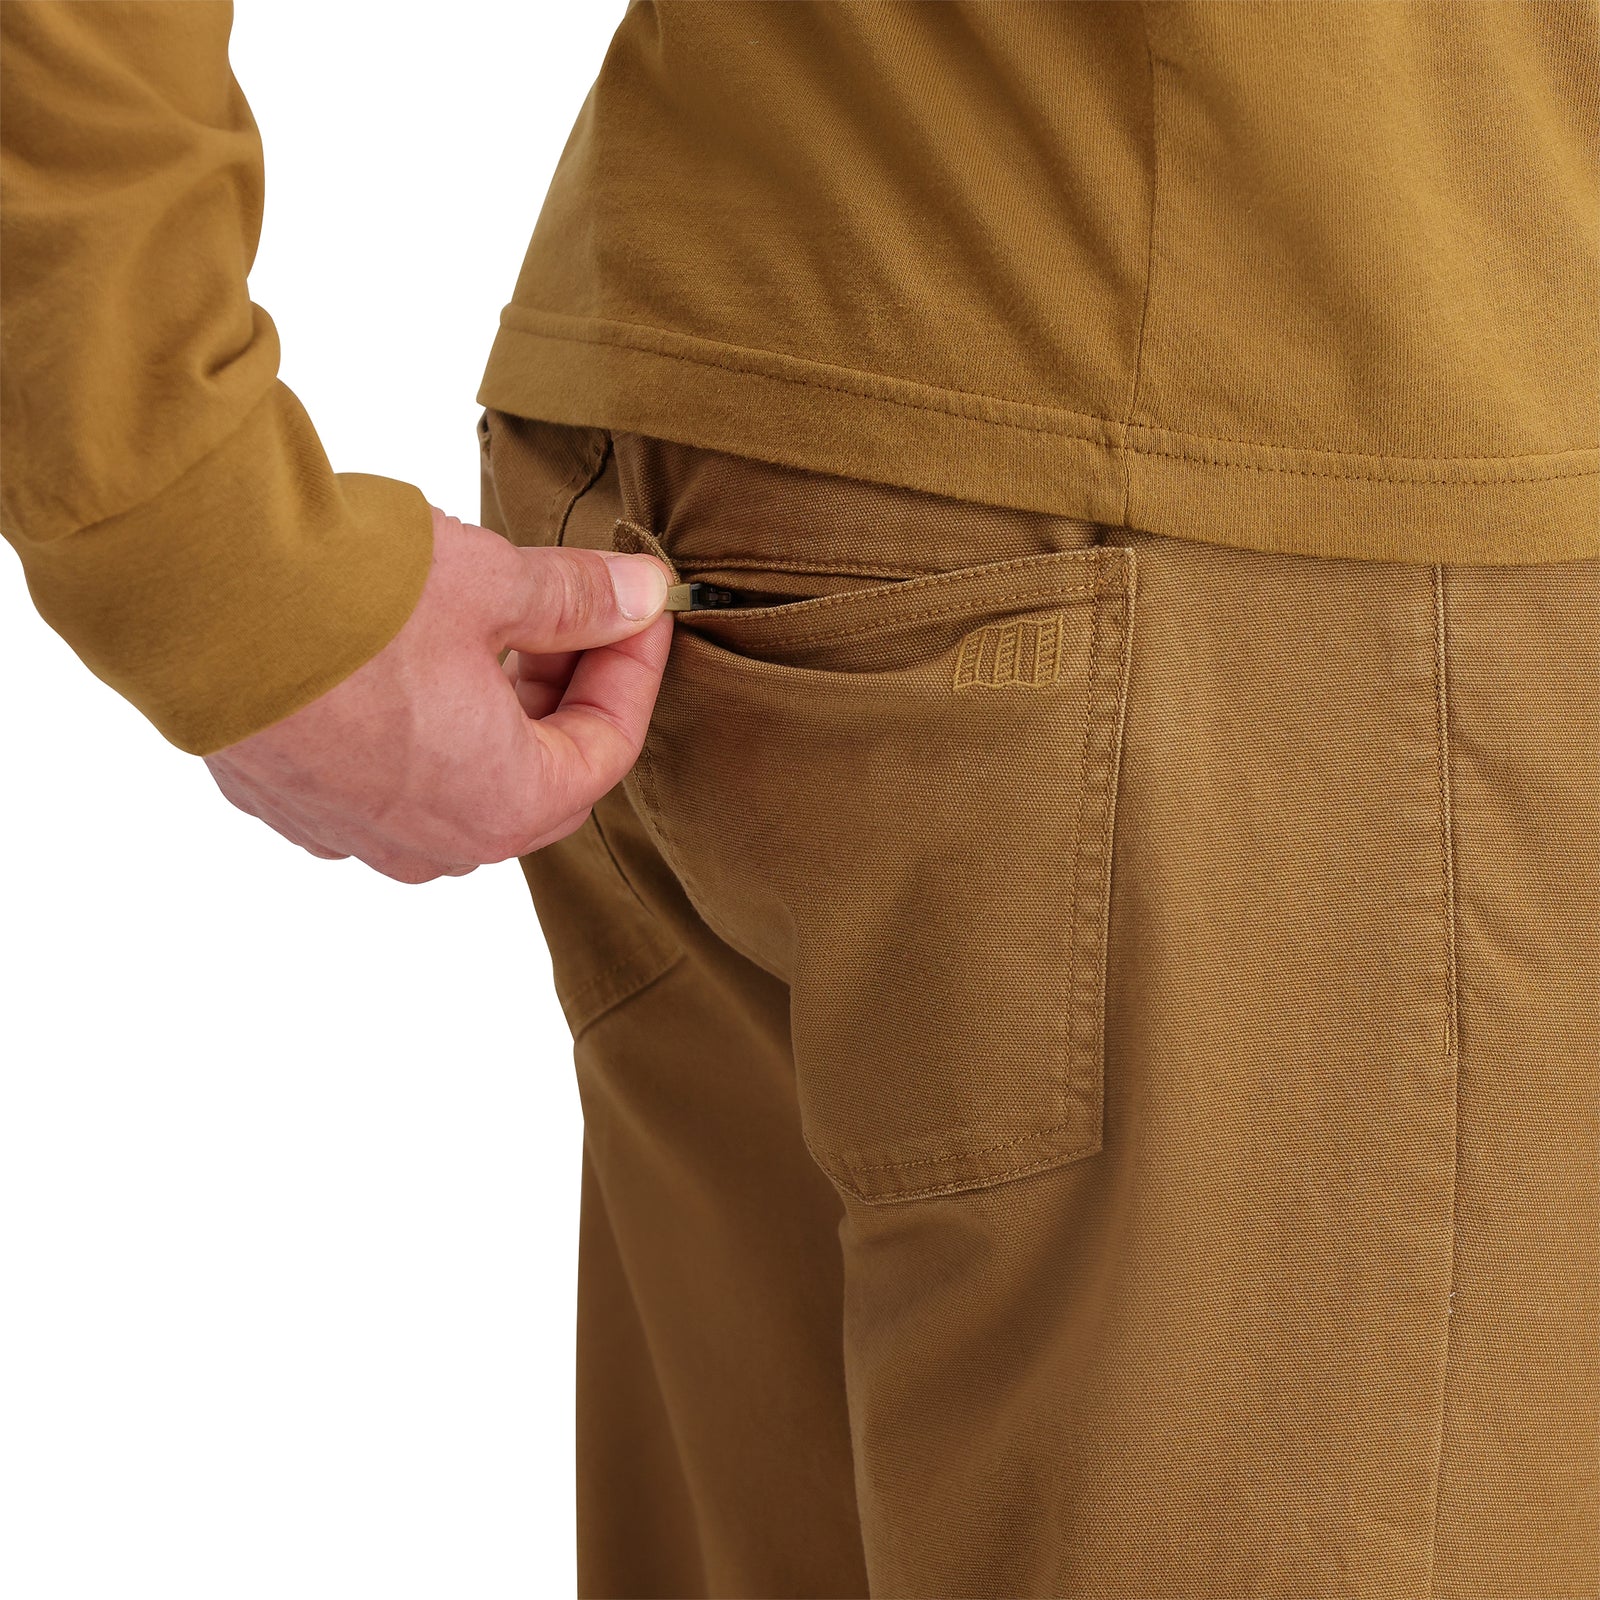 General detail shot of Topo Designs Dirt 5-Pocket Pants in "Dark Khaki"